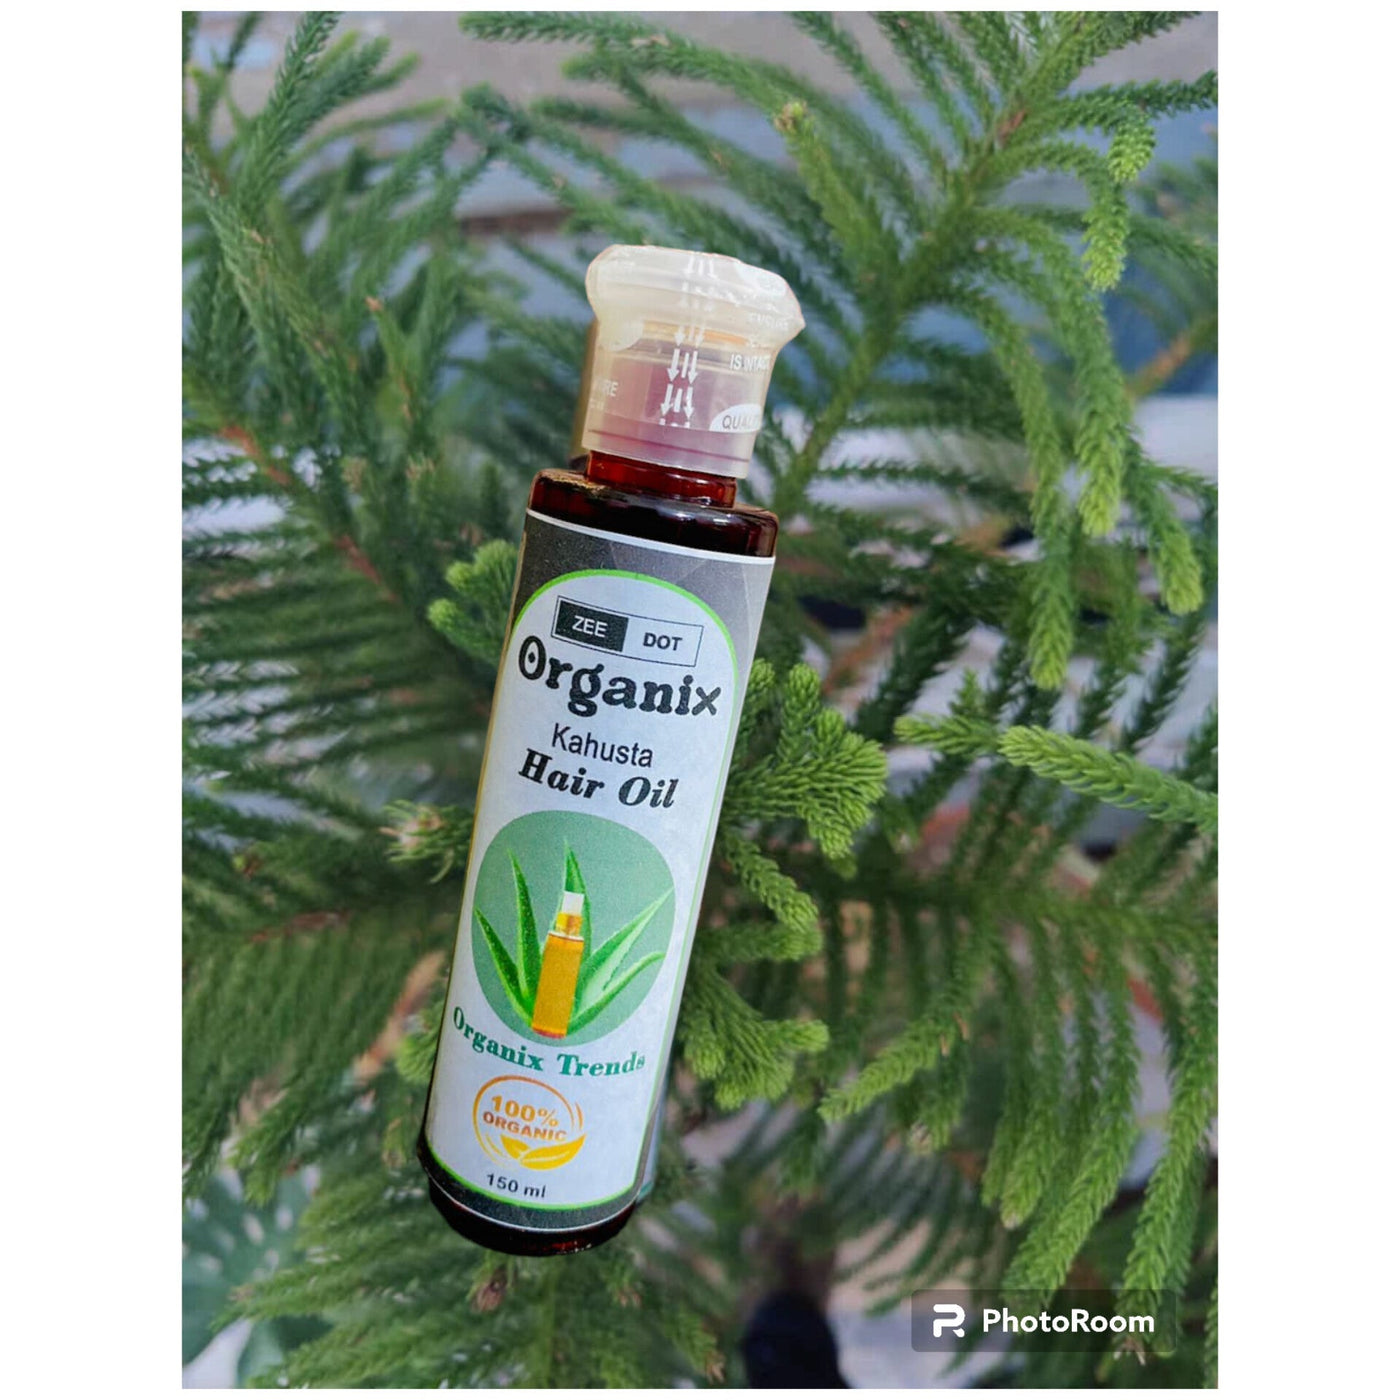 Organic khusta  Hair Oil 150ml